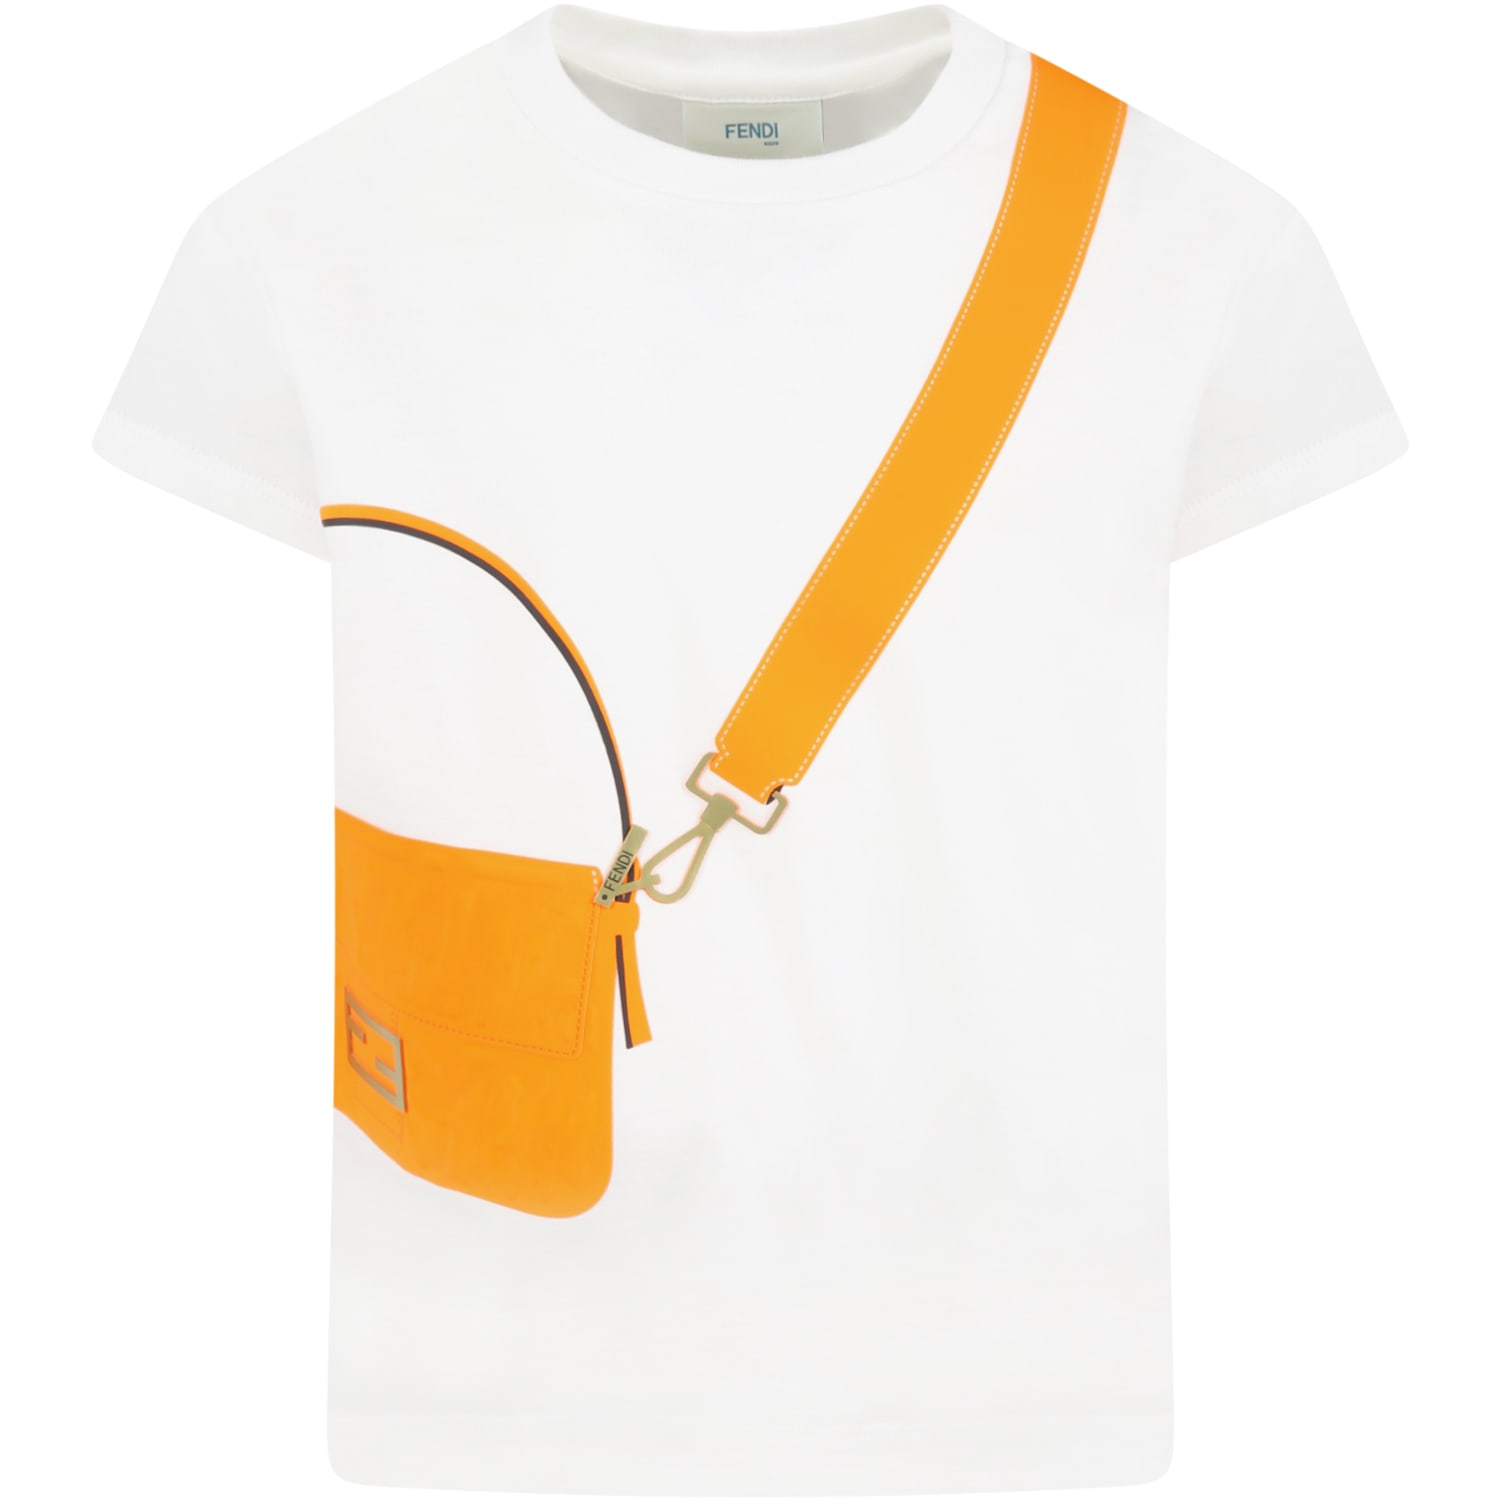 Fendi White T-shirt For Girl With Orange Bag